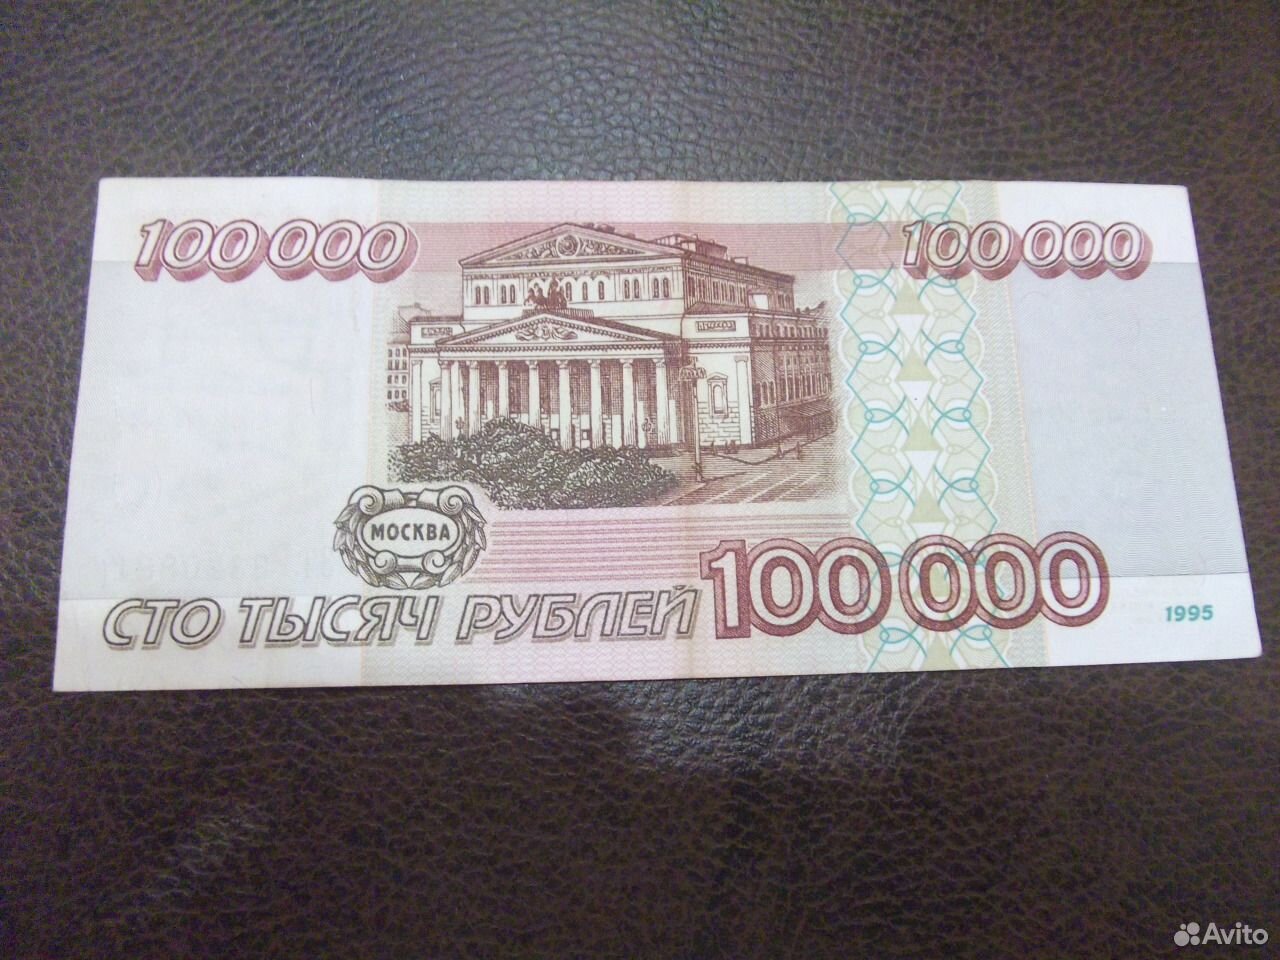 Миллион пятьсот пятьдесят. Купюры 1000000 рублей 1995 года. Банкнота 1000000 рублей. Купюра 5 миллионов рублей. Купюра 100 миллионов рублей.